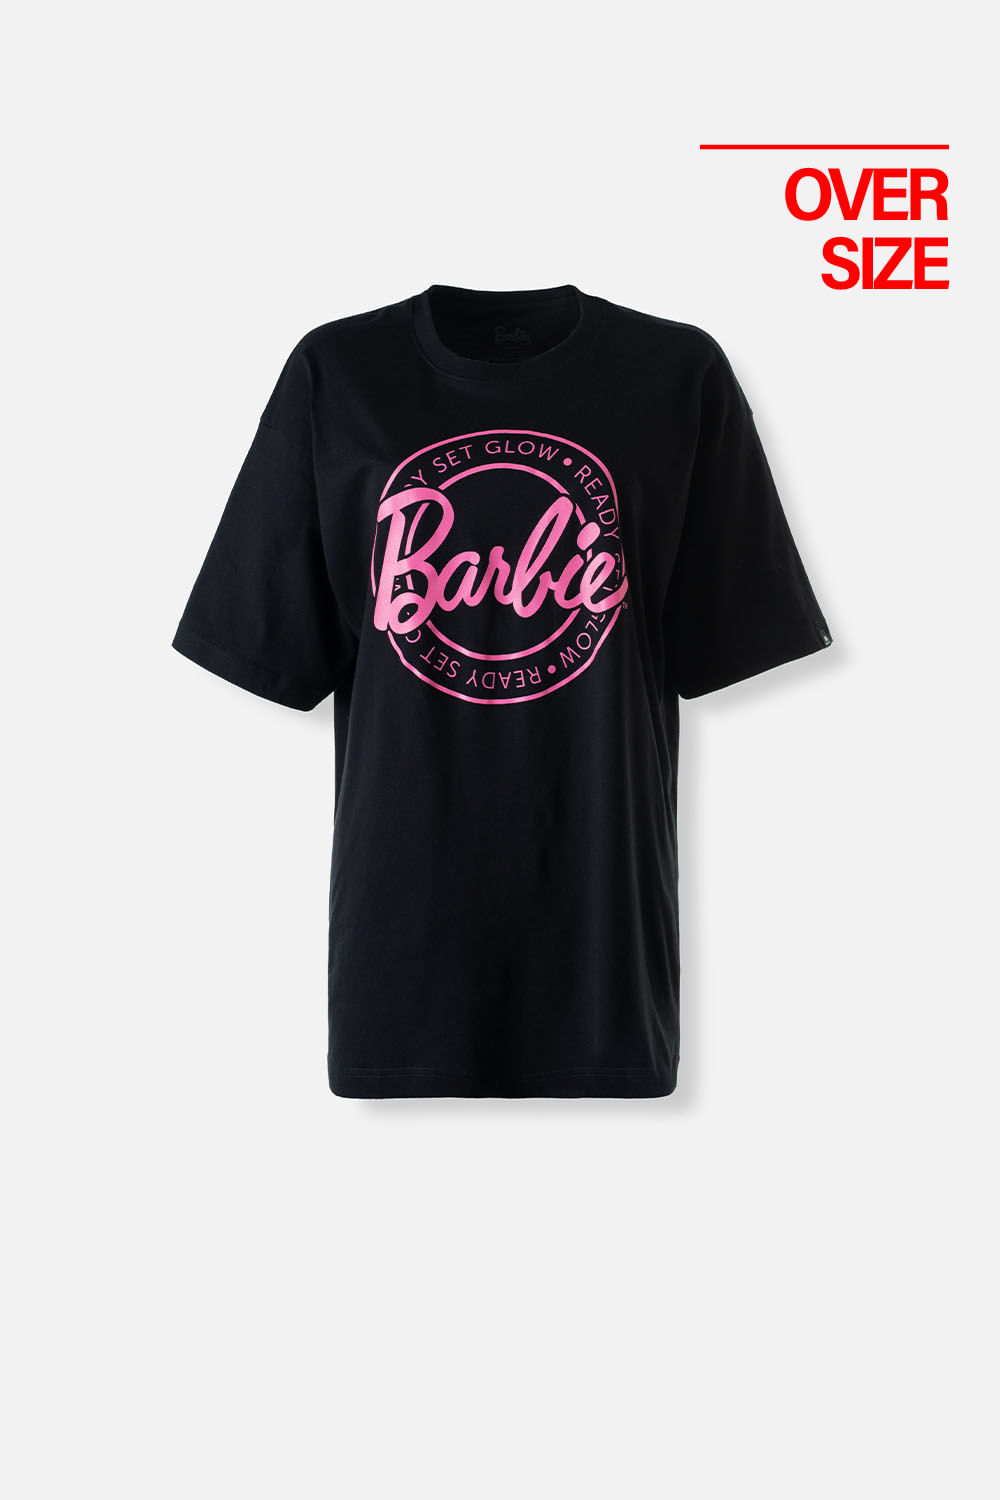 Camiseta de mujer, manga corta oversize fit negra de Barbie Mattel ( Te recomendamos comprar una talla menor a la habitual) XS-0